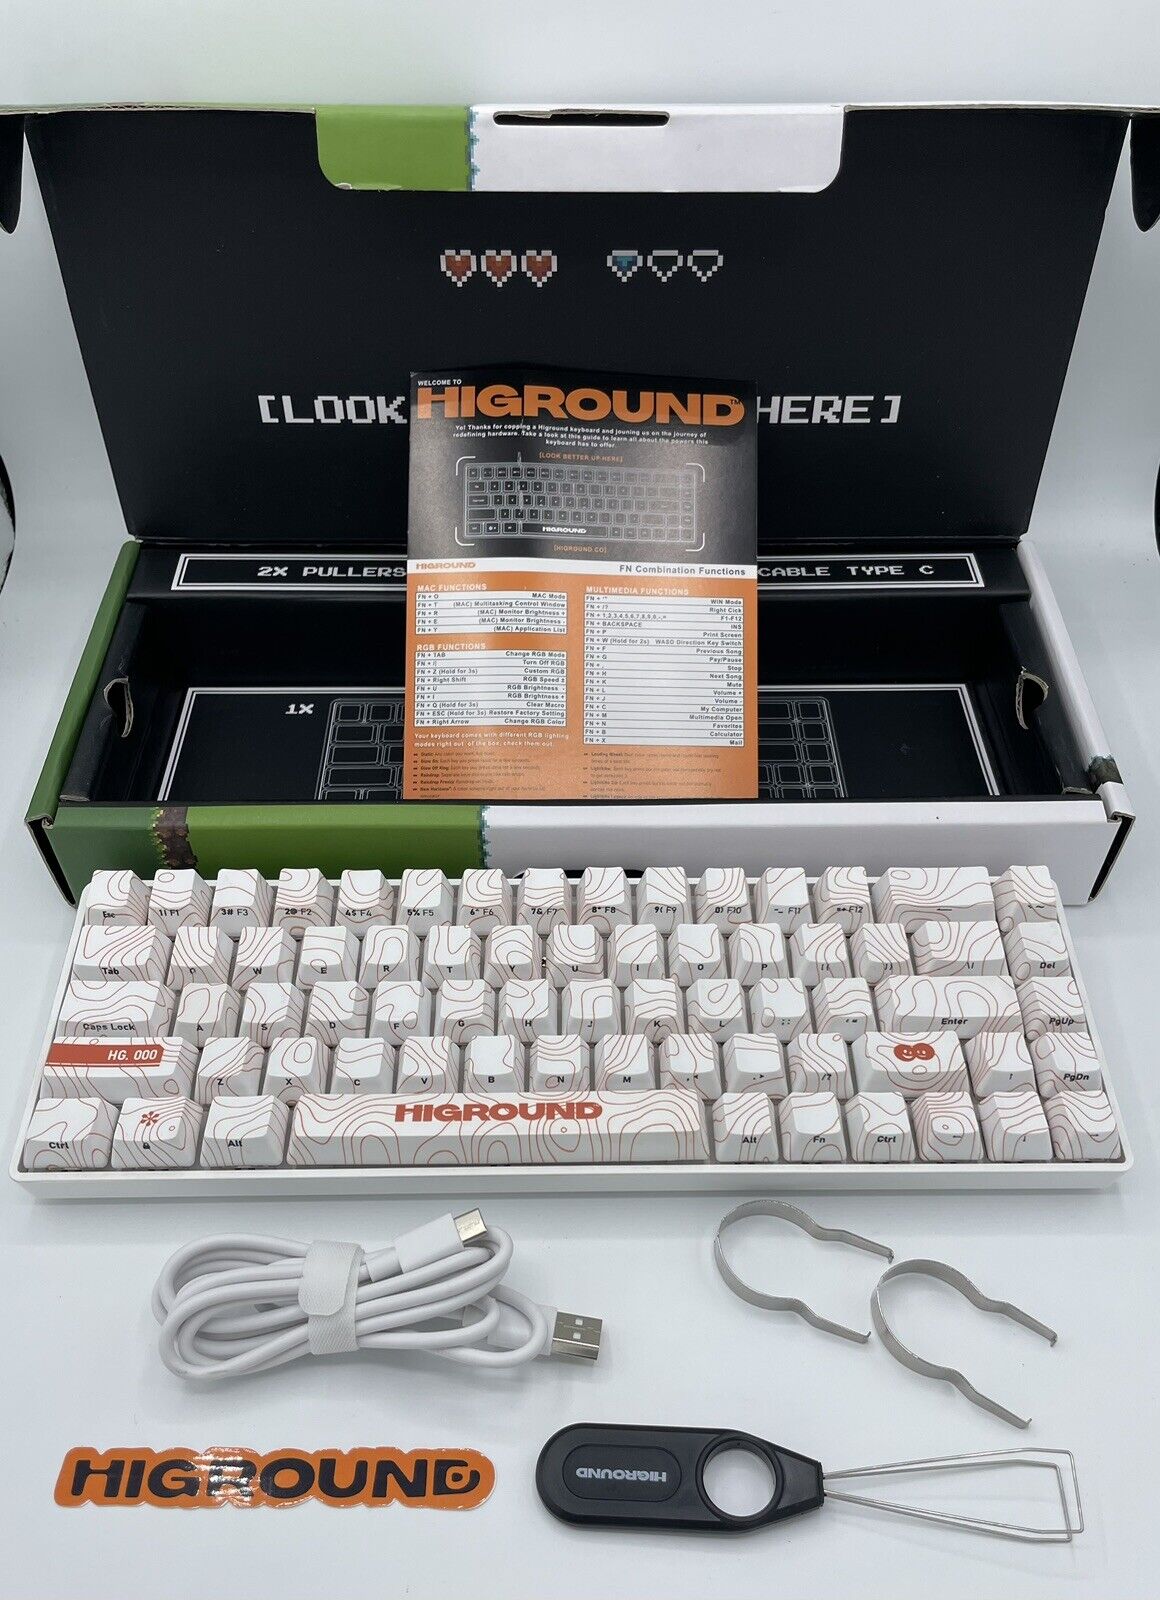 HIGROUND SANDSTONE (Orange), Base 65 Keyboard, HG68, Sold Out - WORKS SEE VIDEO